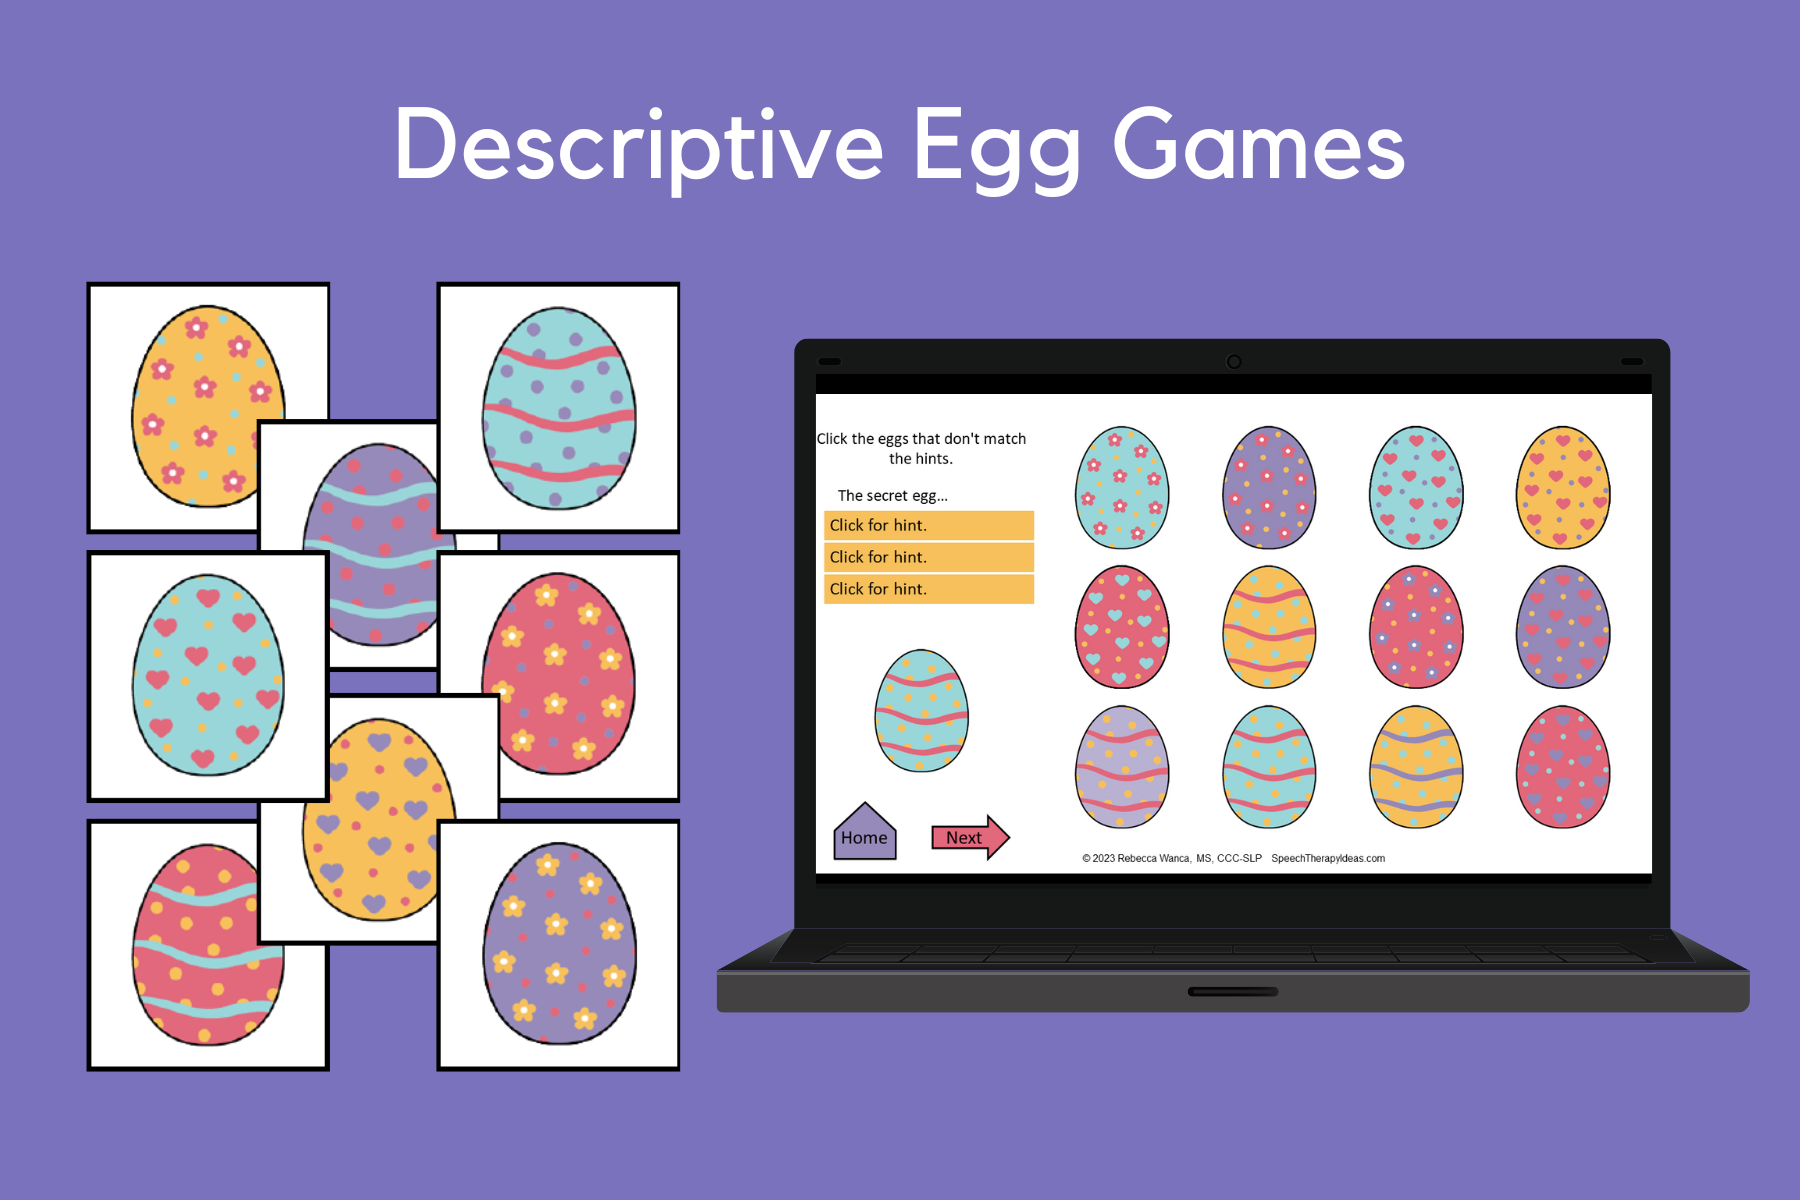 Descriptive Egg Games